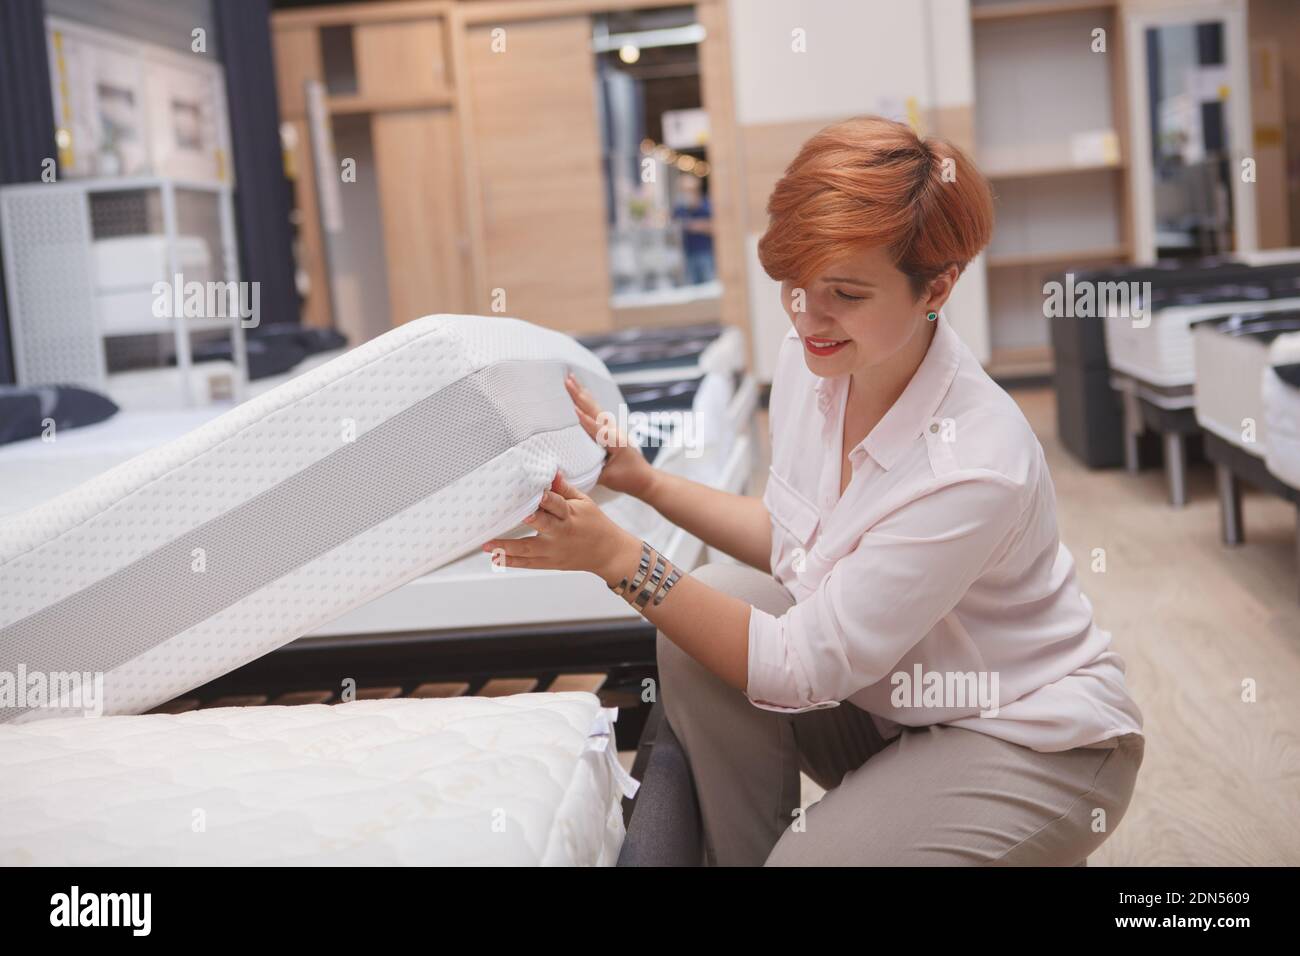 Fröhliche junge Frau lächelnd, die Wahl neue orthopädische Matratze zu kaufen Stockfoto